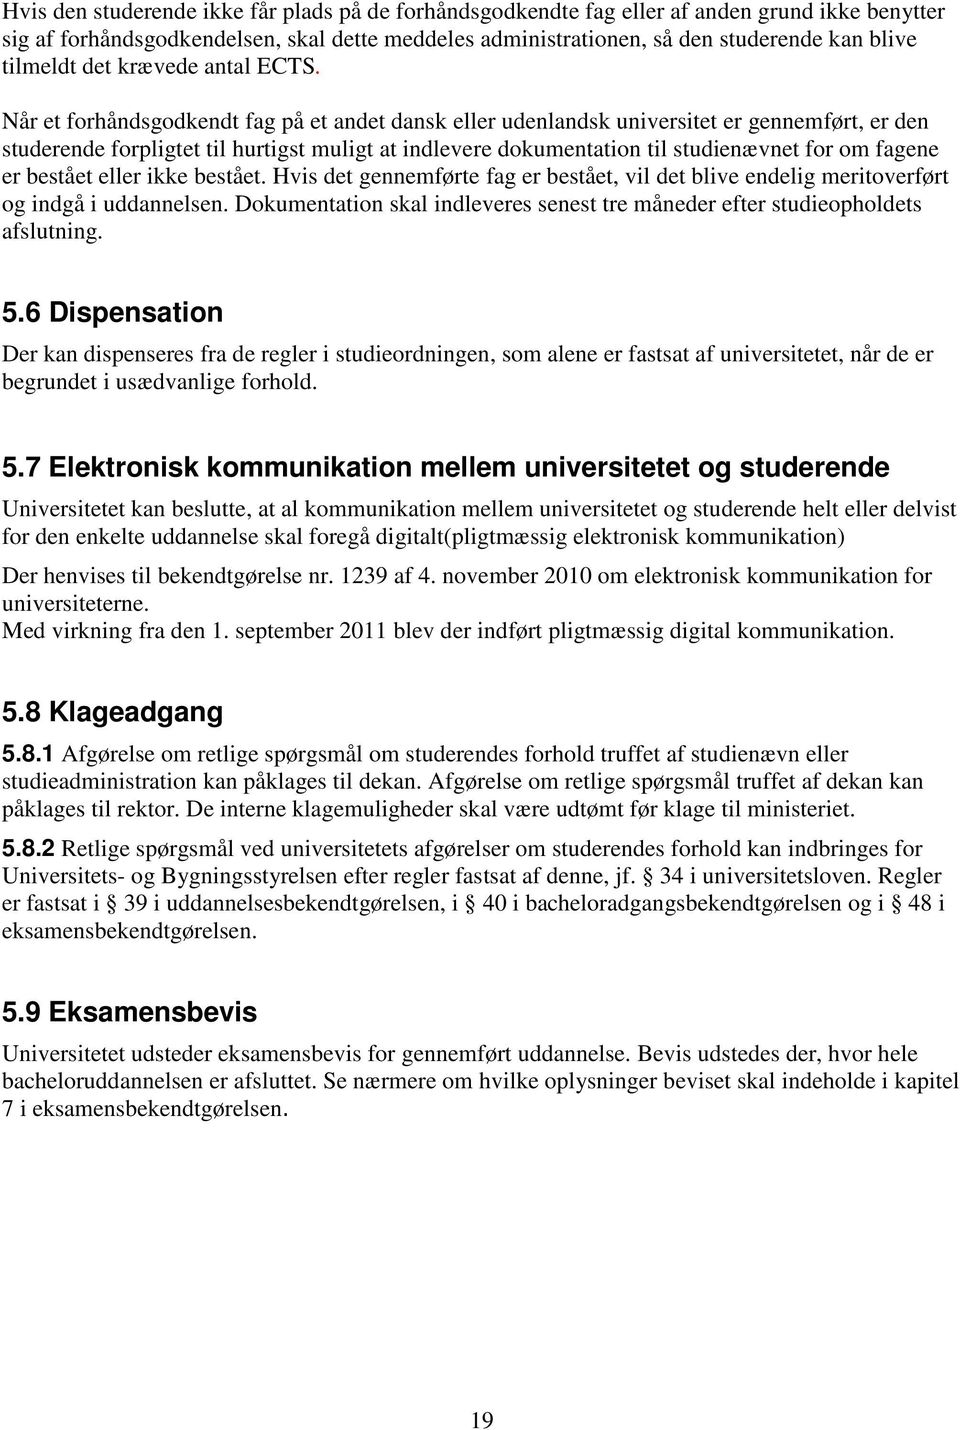 Når et forhåndsgodkendt fag på et andet dansk eller udenlandsk universitet er gennemført, er den studerende forpligtet til hurtigst muligt at indlevere dokumentation til studienævnet for om fagene er